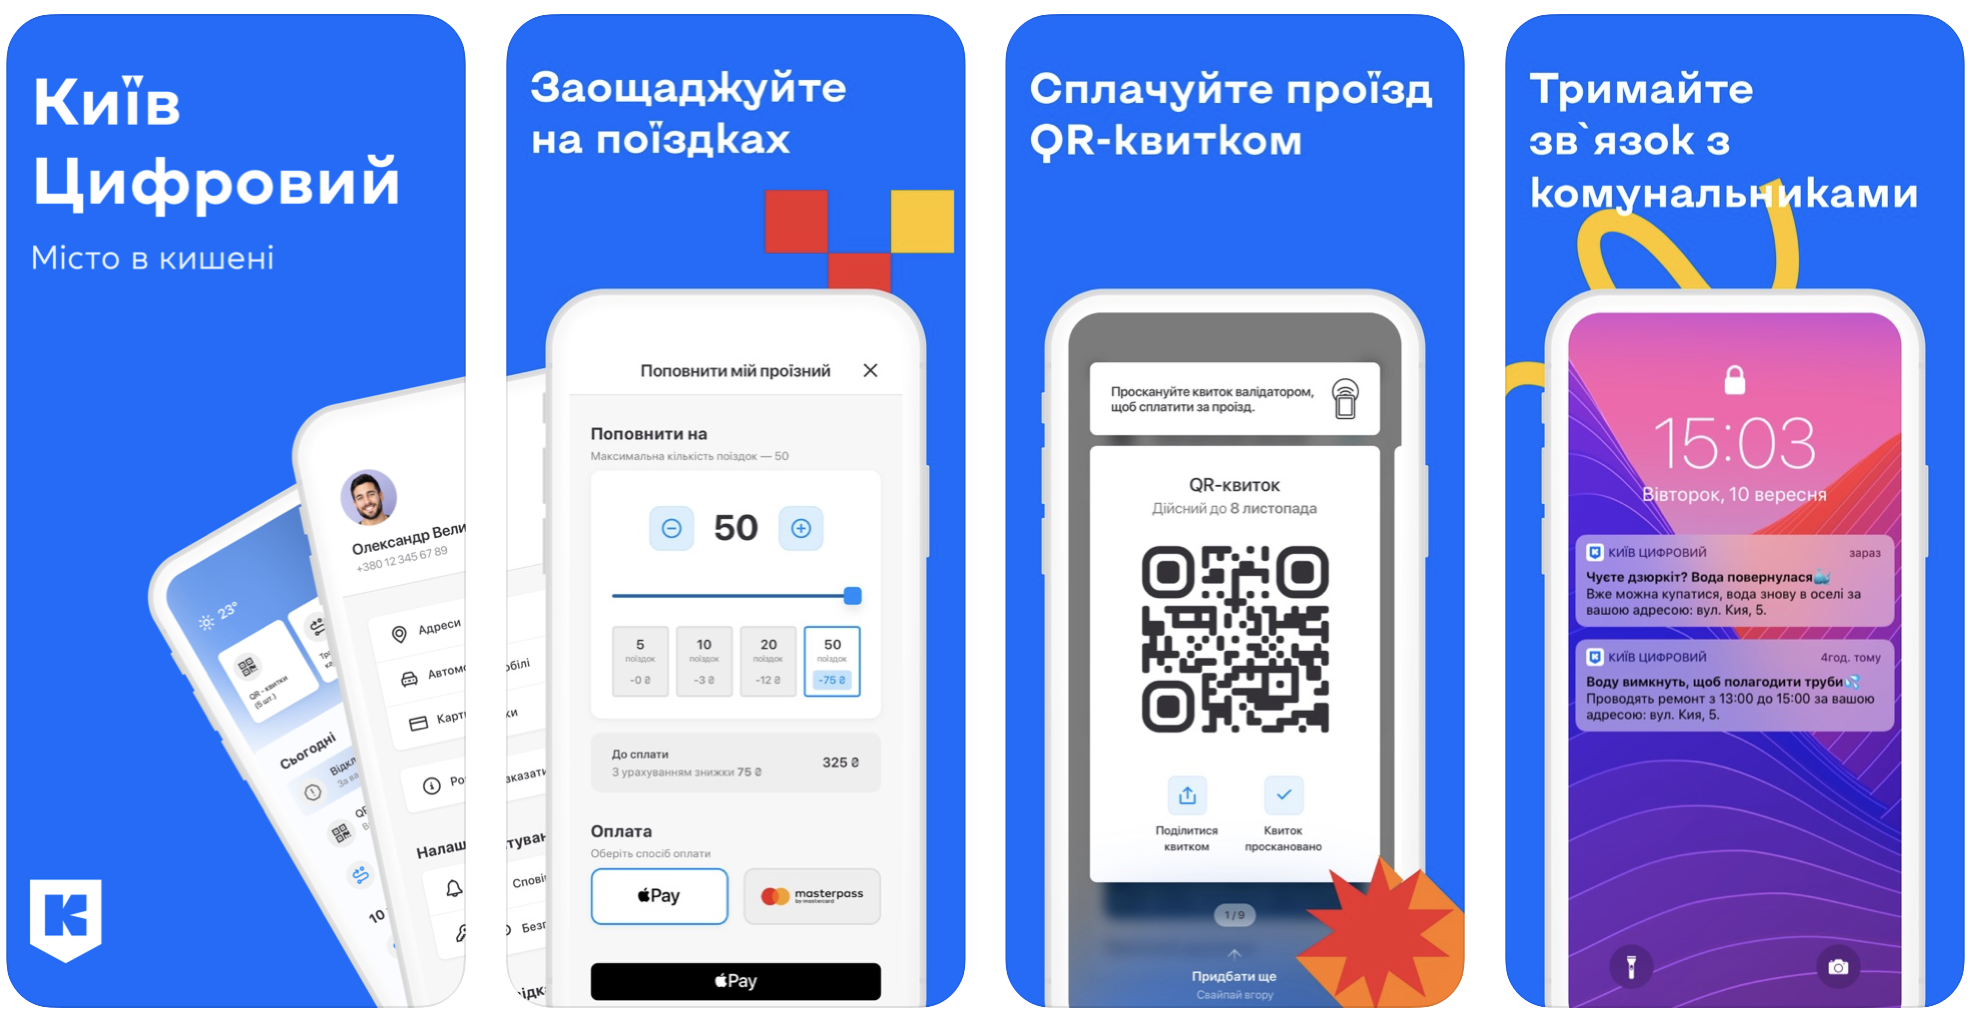 Приложение «Киев Цифровой» вошло в топ-10 приложений в App Store — оно популярнее Instagram, YouTube и TikTok